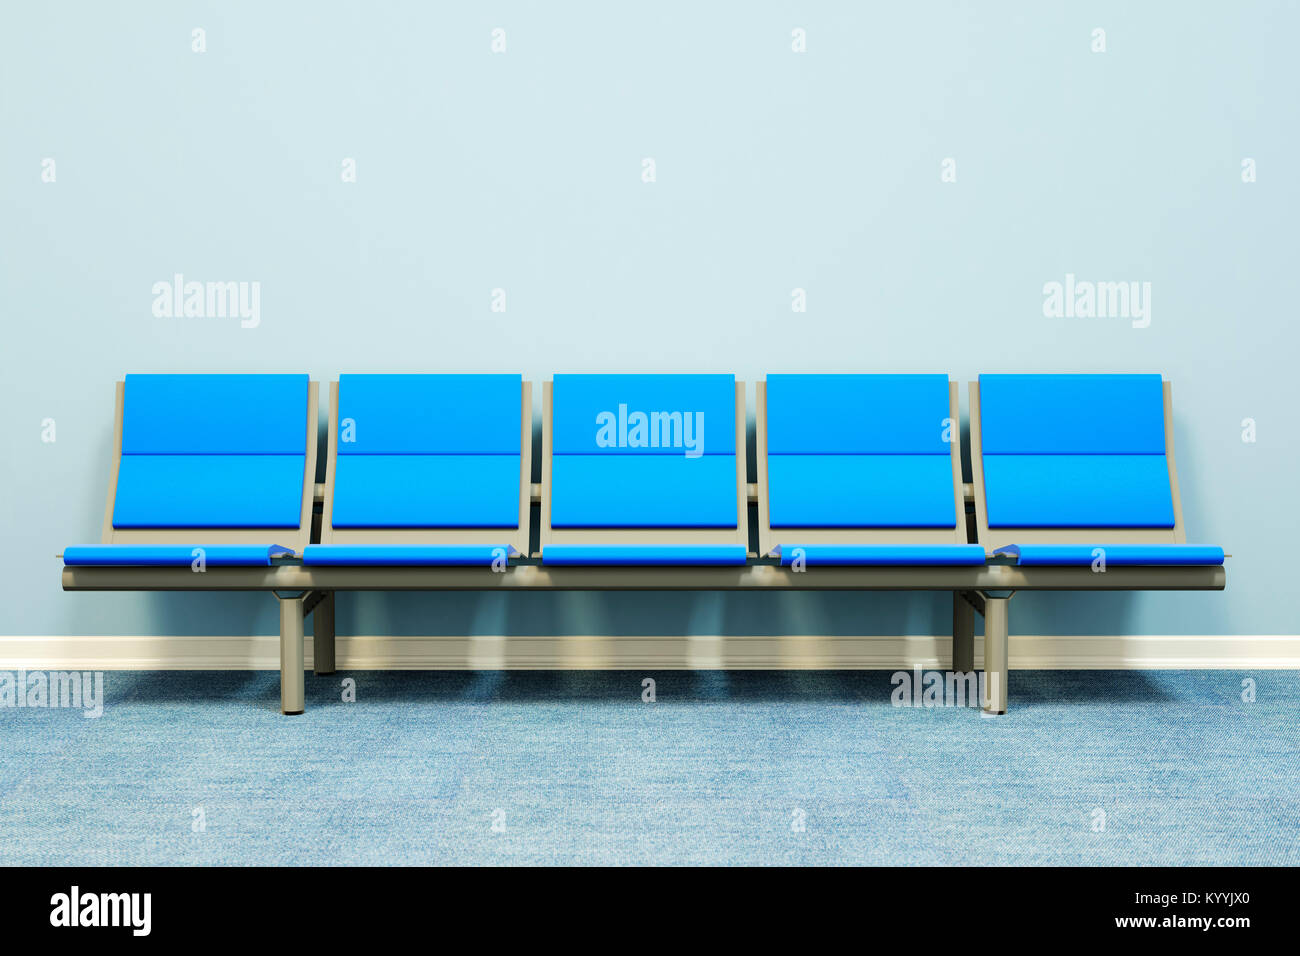 Cinq sièges dans une rangée contre un mur dans une salle vide - salle d'attente, l'hôpital, les médecins de médecine, concept d'entrevue d'emploi Banque D'Images